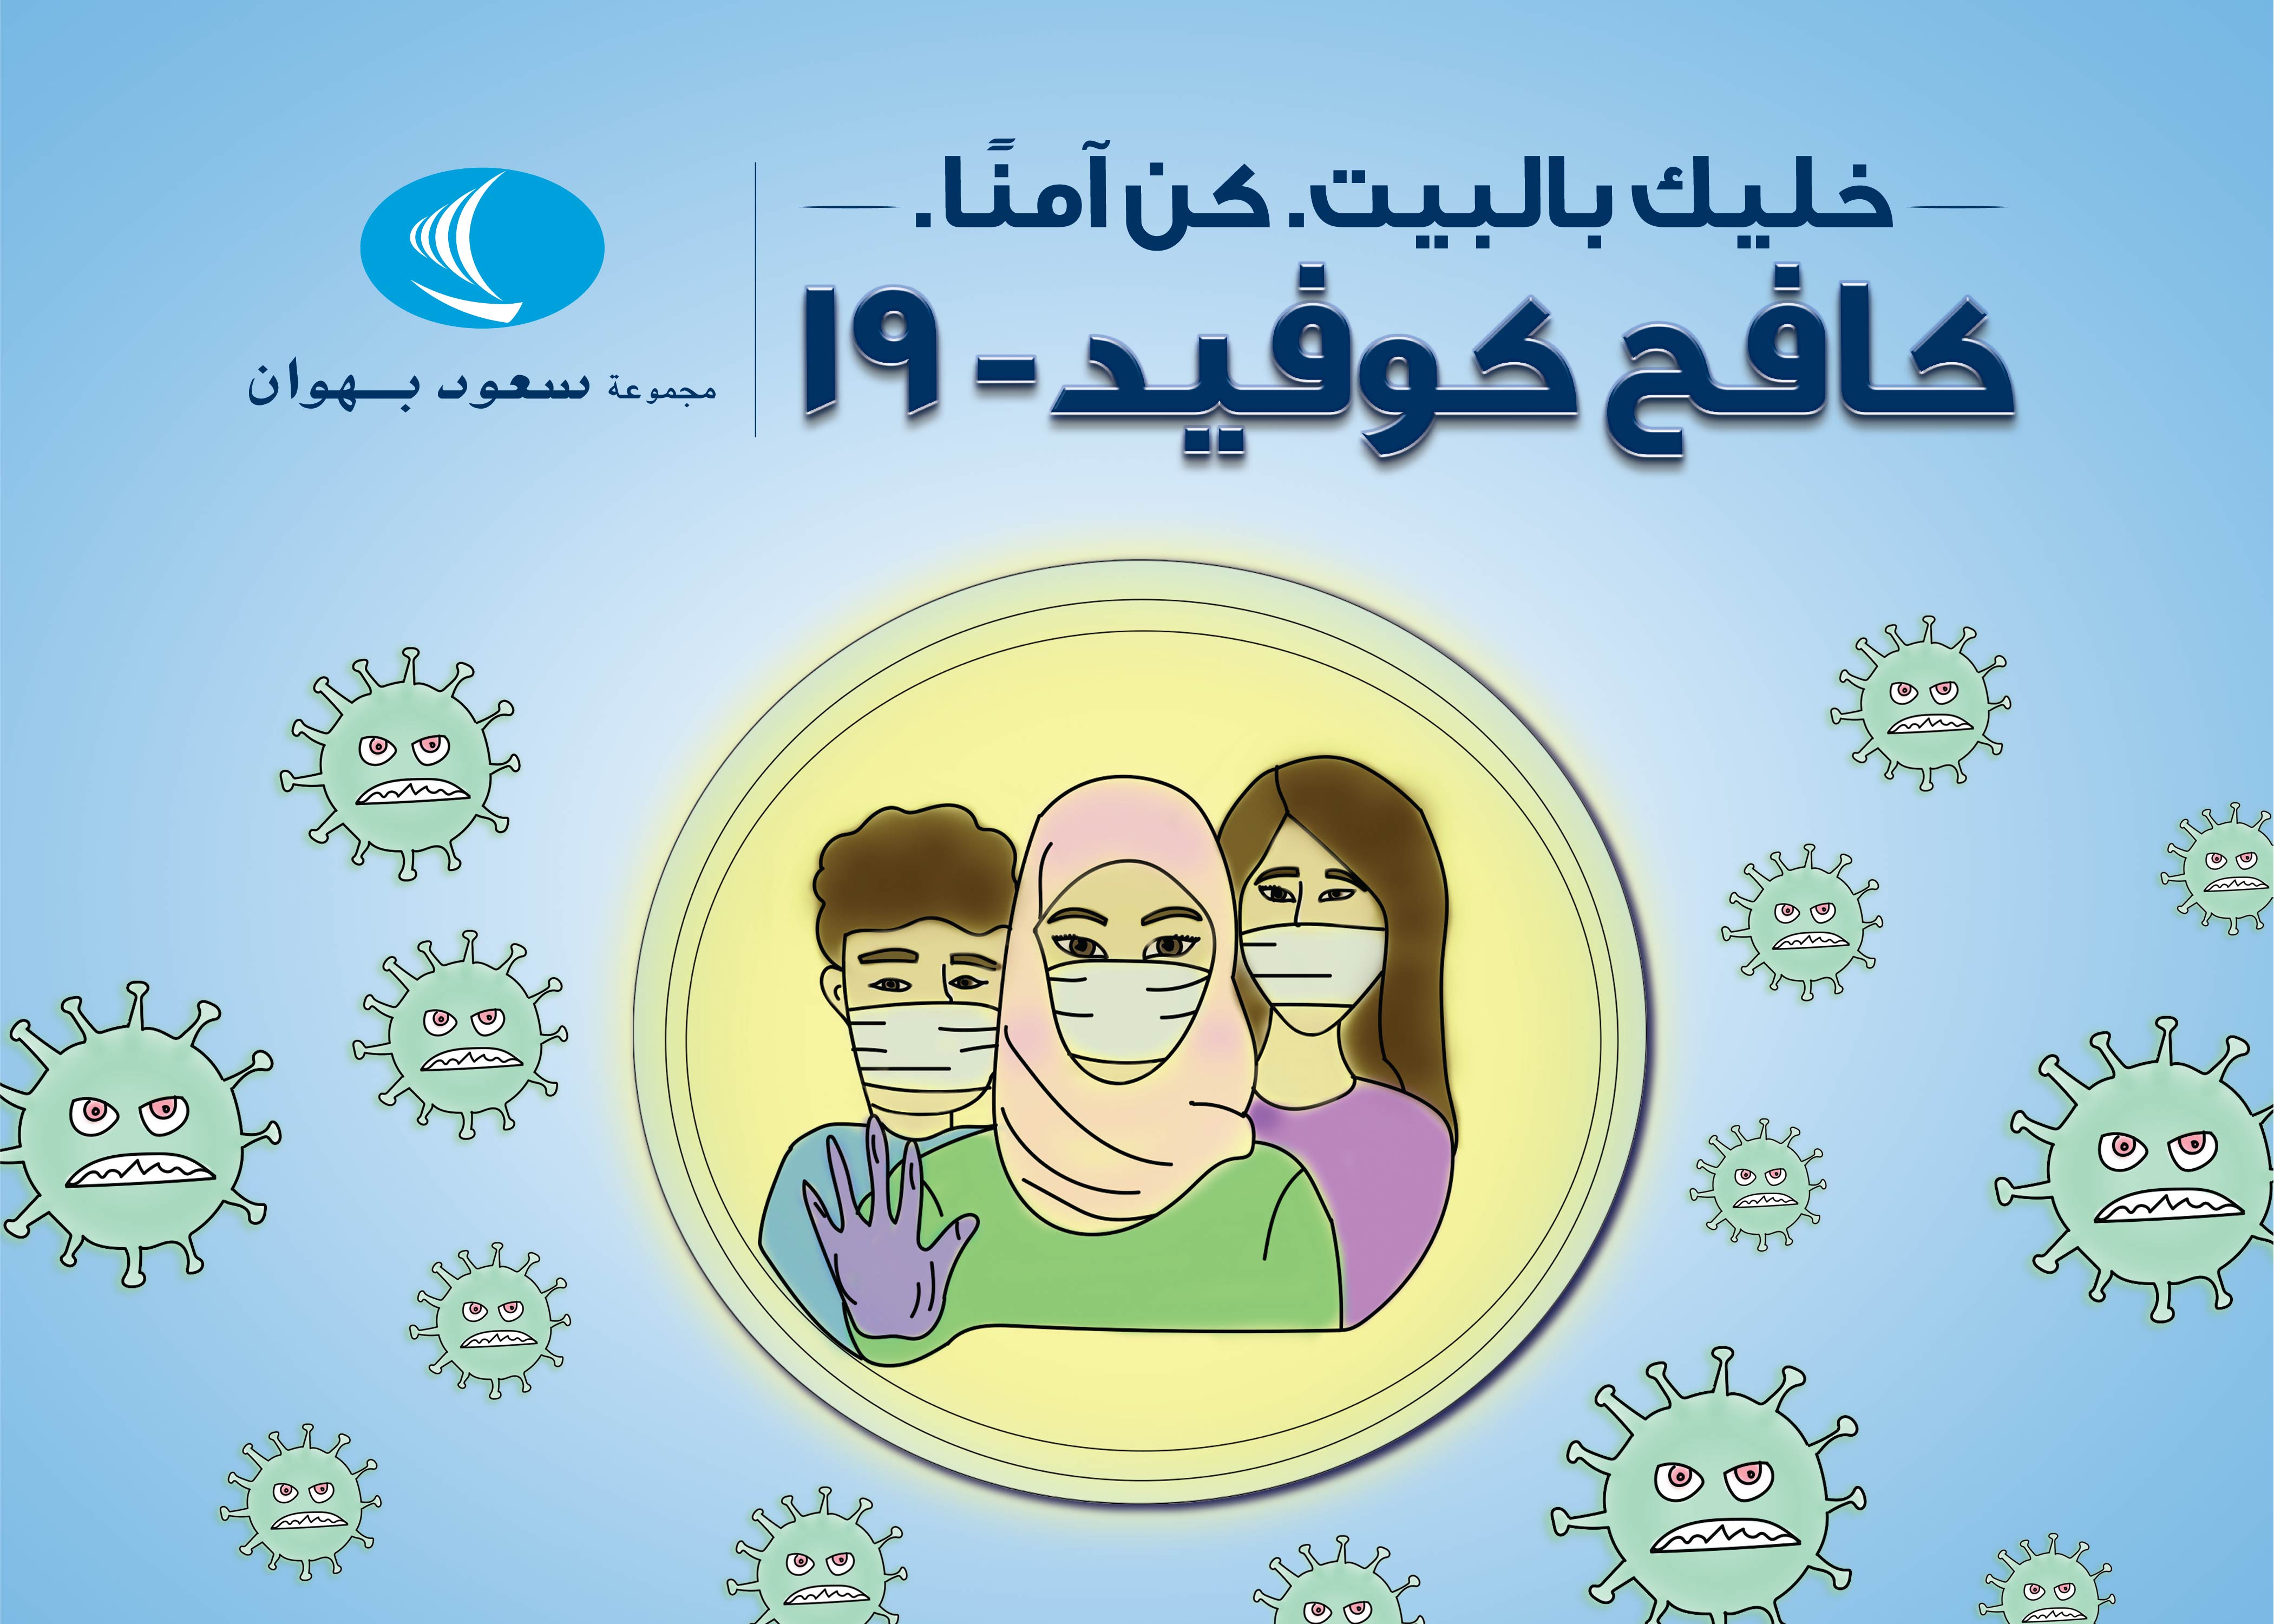 مبادرات مجموعة سعود بهوان لمكافحة فيروس كورونا "كوفيد19"